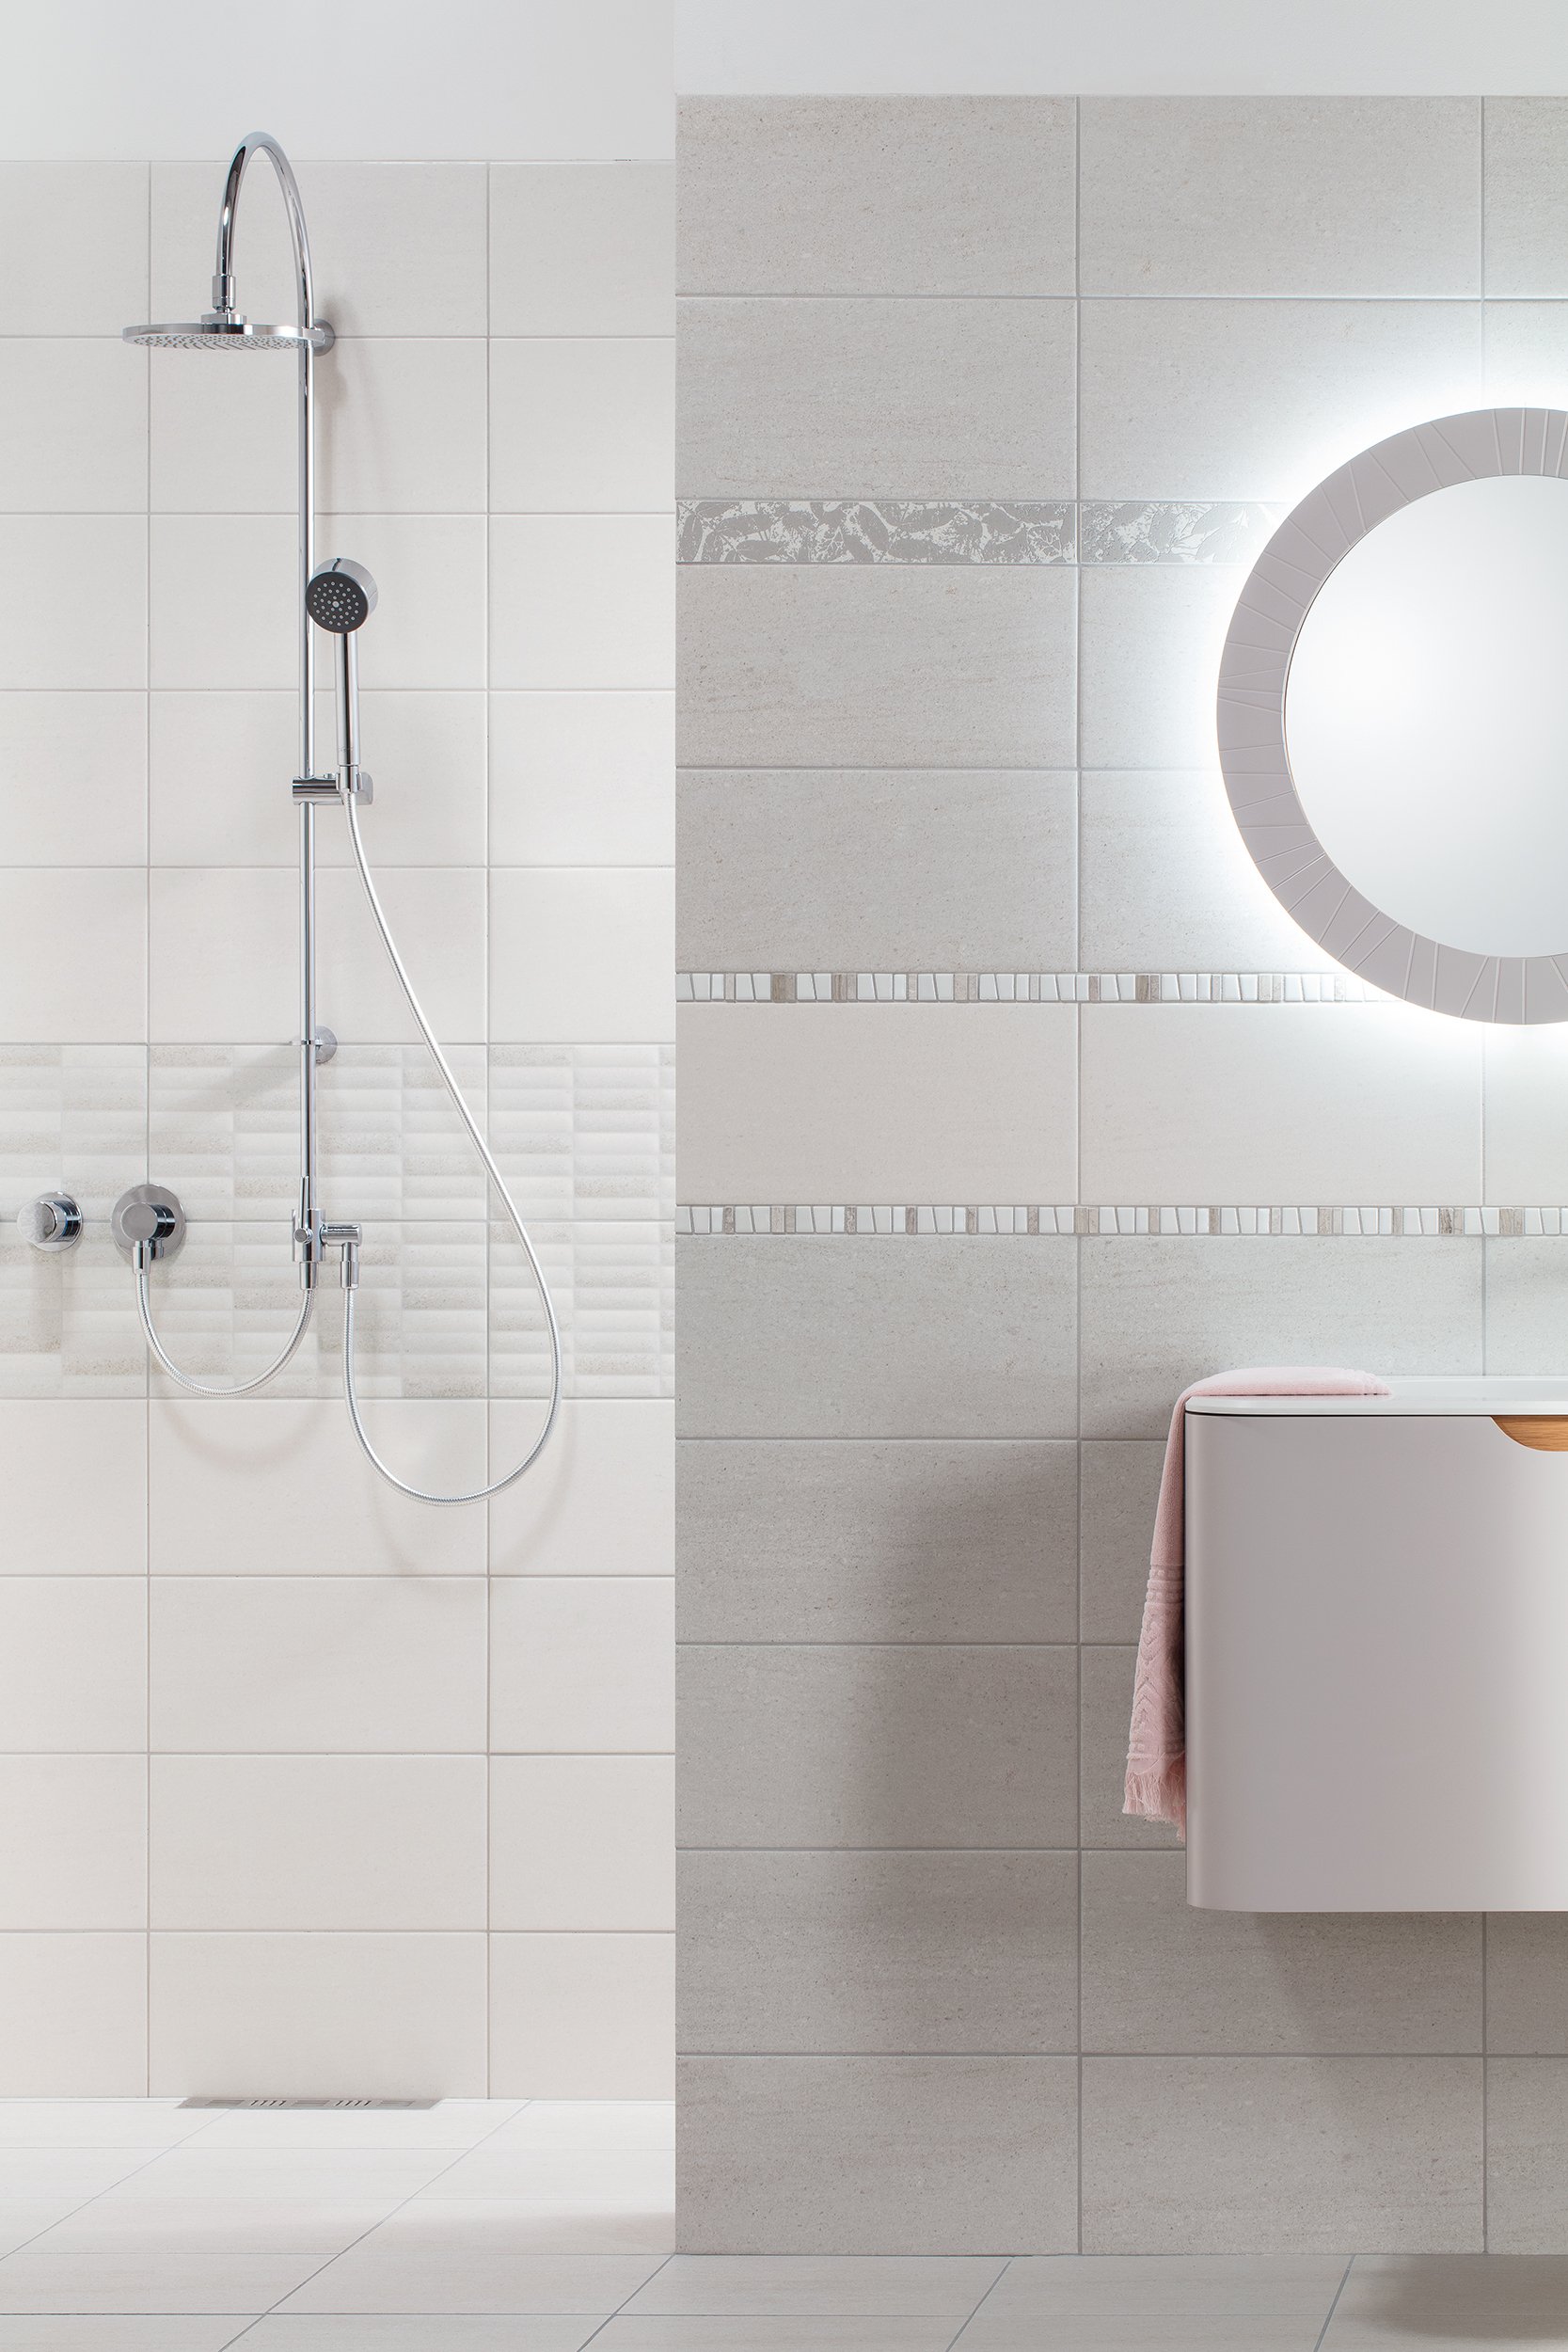 #RAKO #Garda #Obklady a dlažby #Koupelna #kámen #Moderní styl #šedá #Matný obklad #Střední formát #350 - 500 Kč/m2 #new 